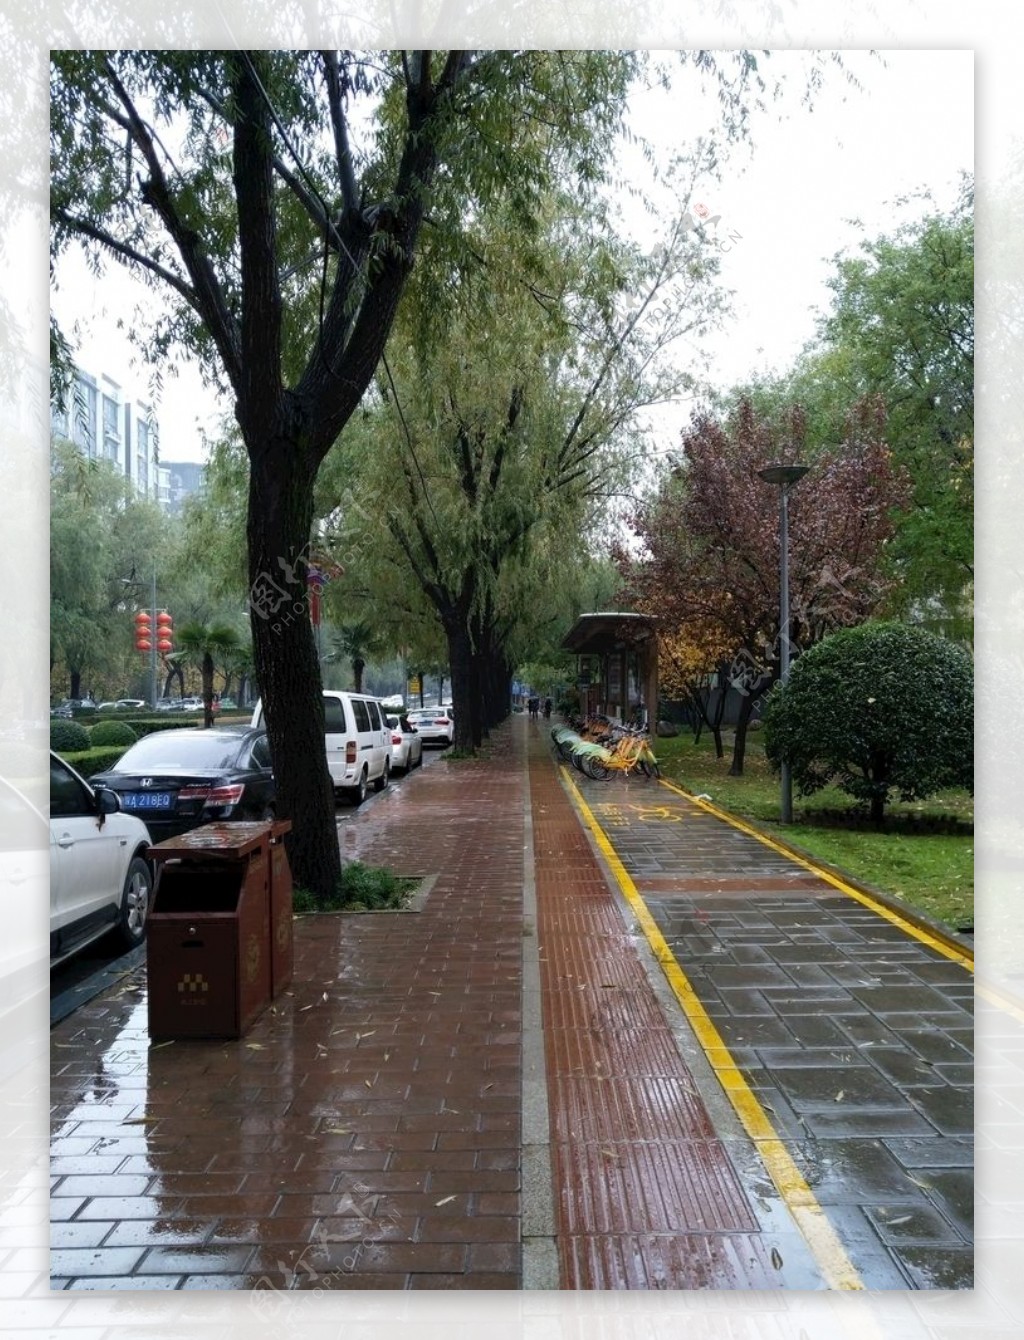 雨天的城市街道